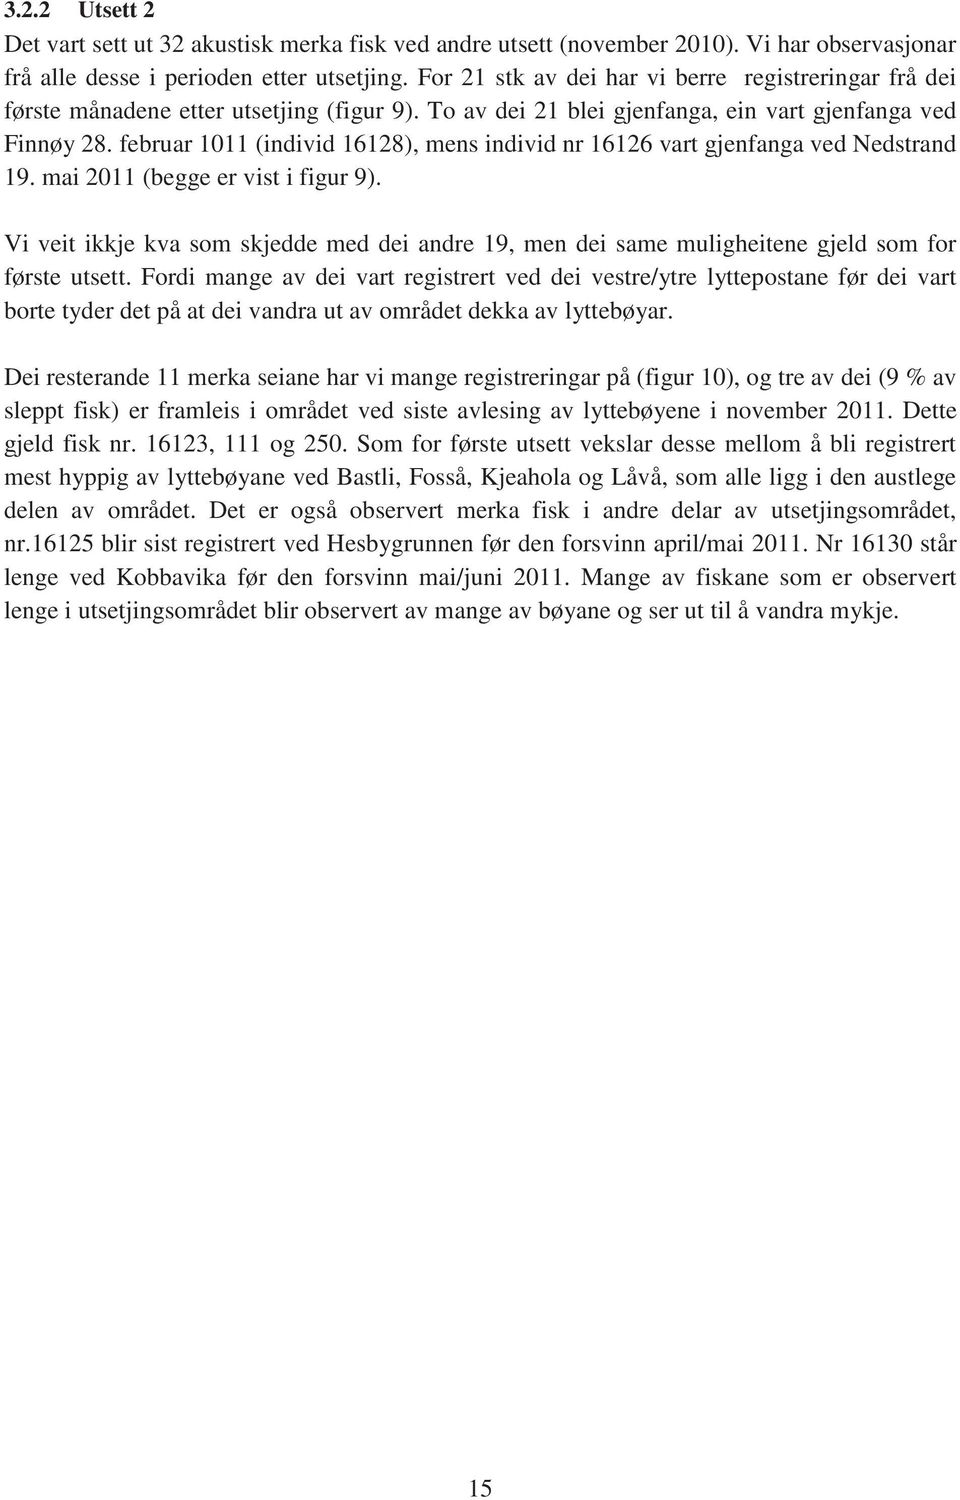 februar 1011 (individ 16128), mens individ nr 16126 vart gjenfanga ved Nedstrand 19. mai 2011 (begge er vist i figur 9).